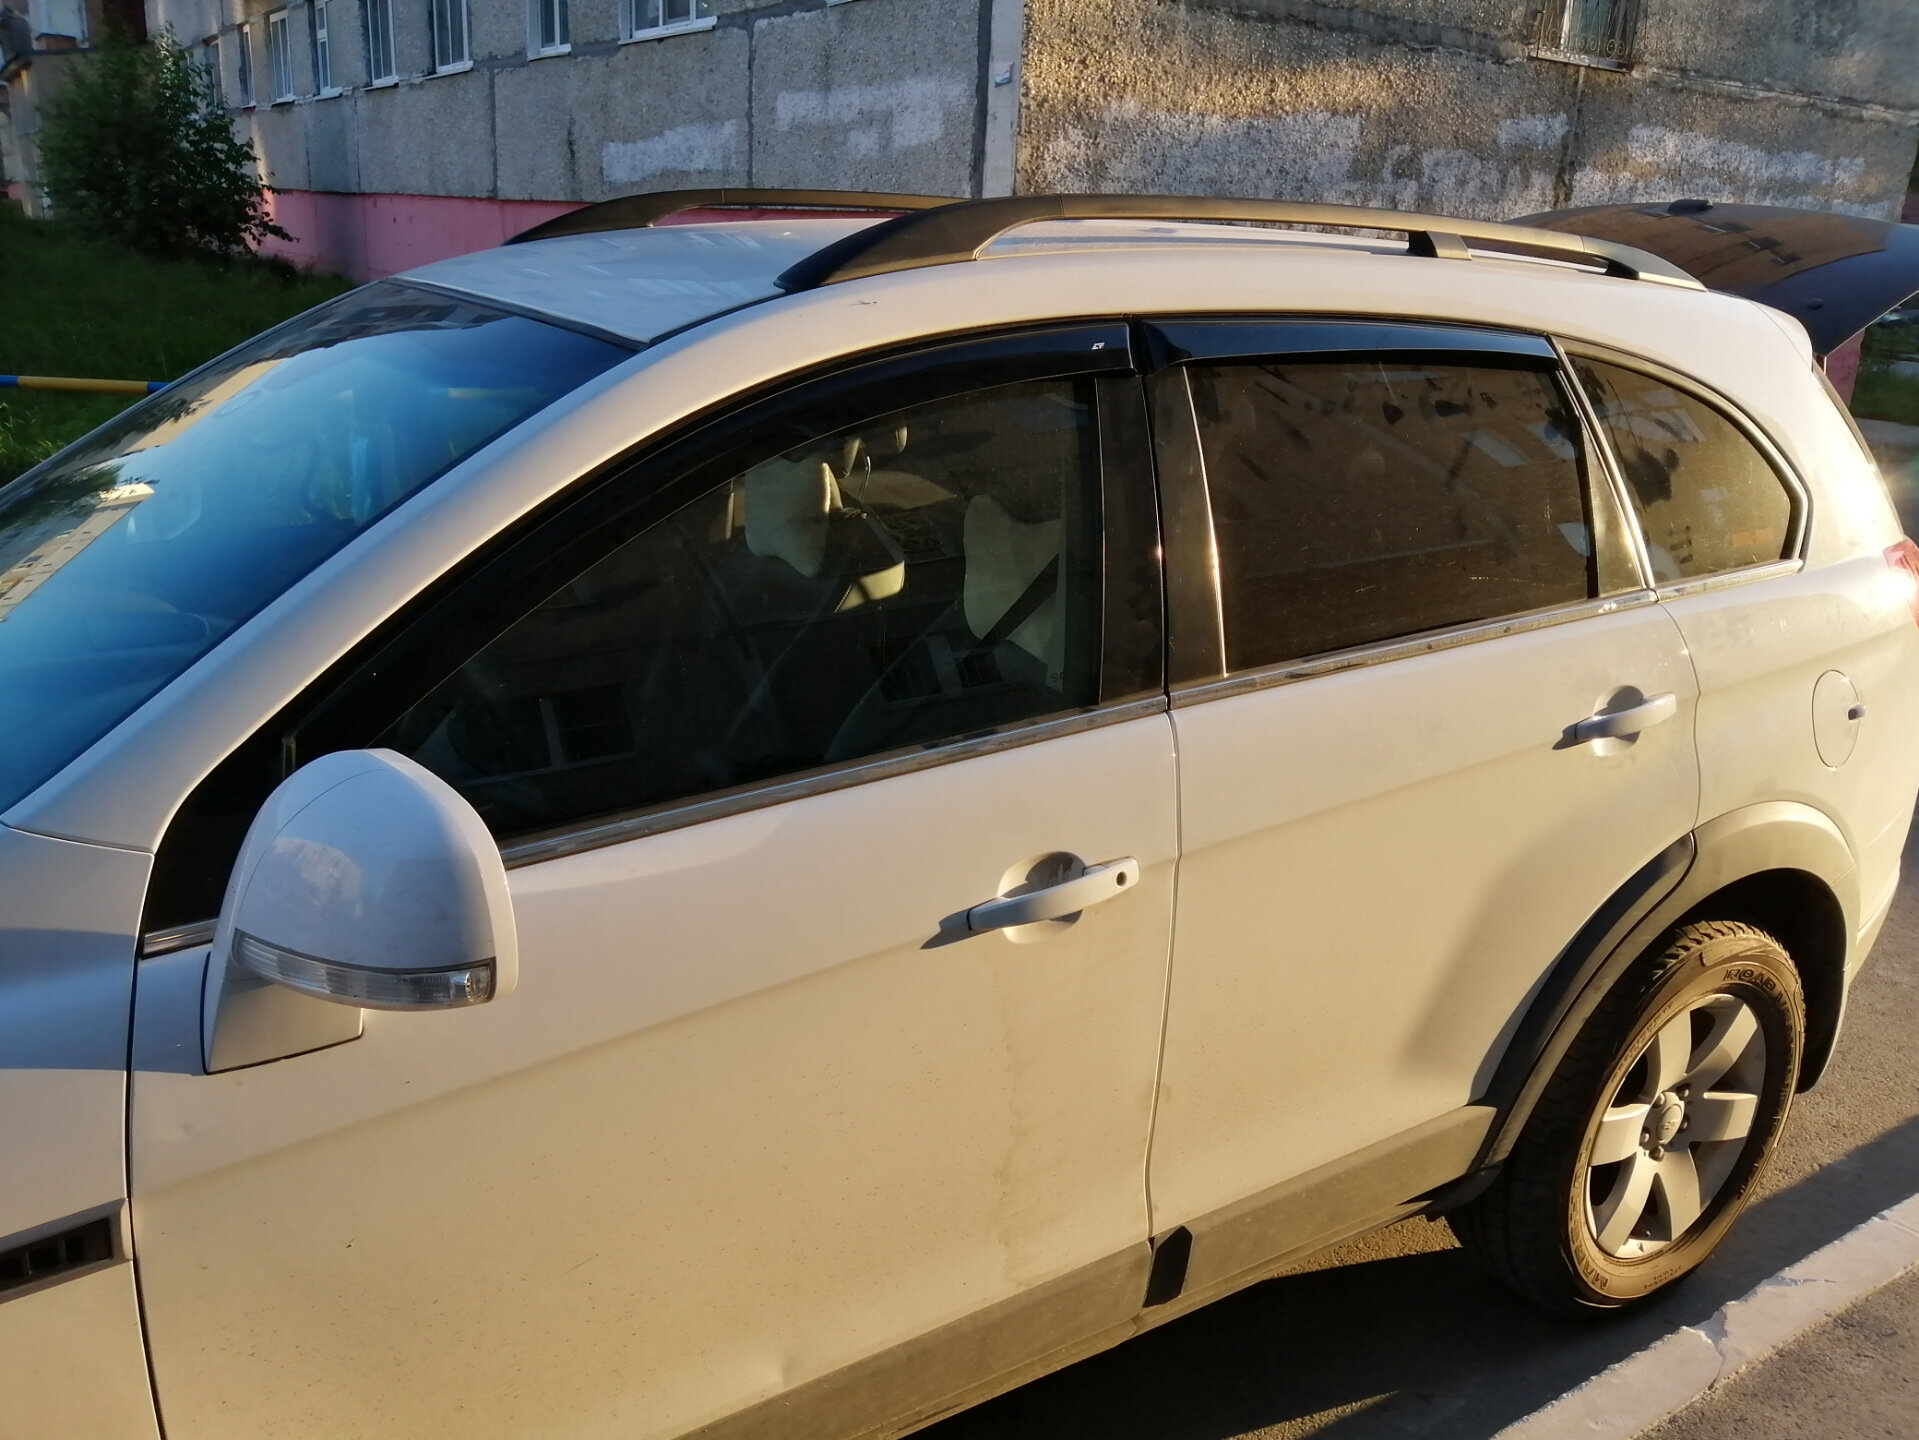 Дефлекторы на боковые окна на Chevrolet Captiva / Opel Antara 2006-2013 г. / Ветровики на Опель Антара / Ветровики на Шевроле Каптива